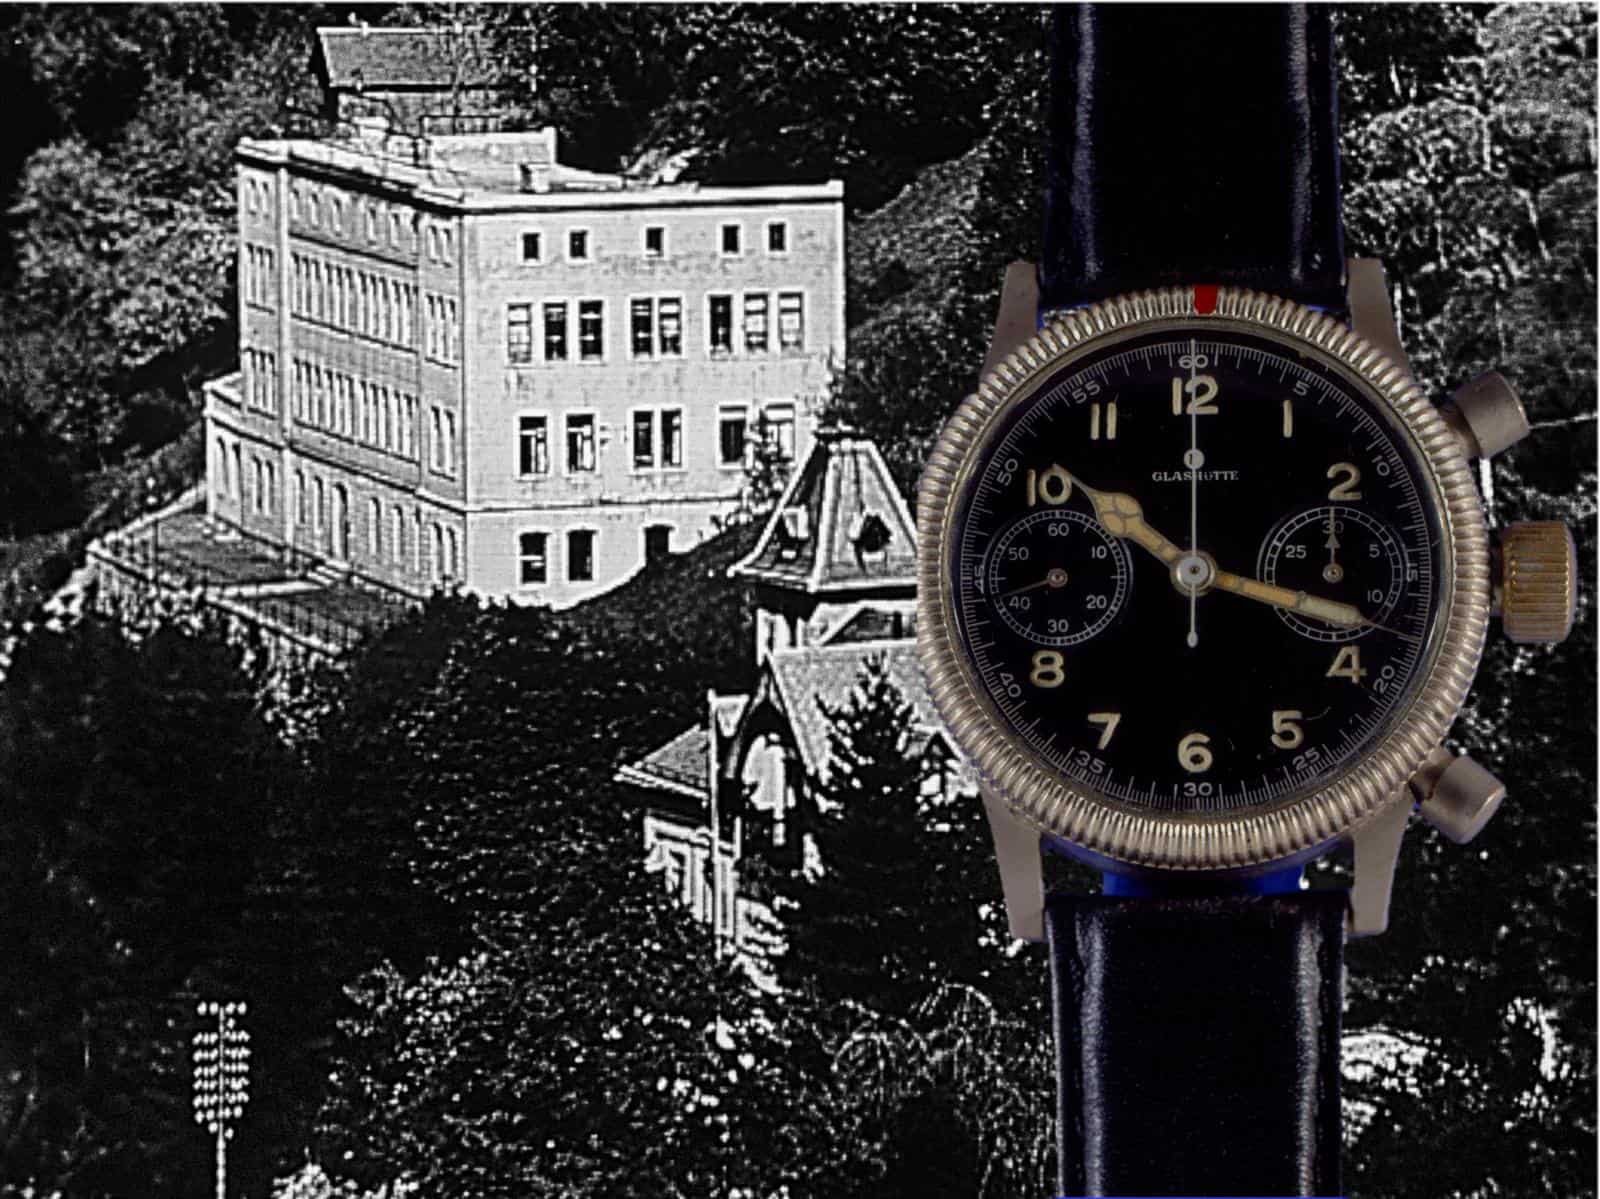 Die alte Tutima Uhrenfabrik in Glashütte und ihr Flaggschiff, der Fliegerchronograph Kaliber 59 